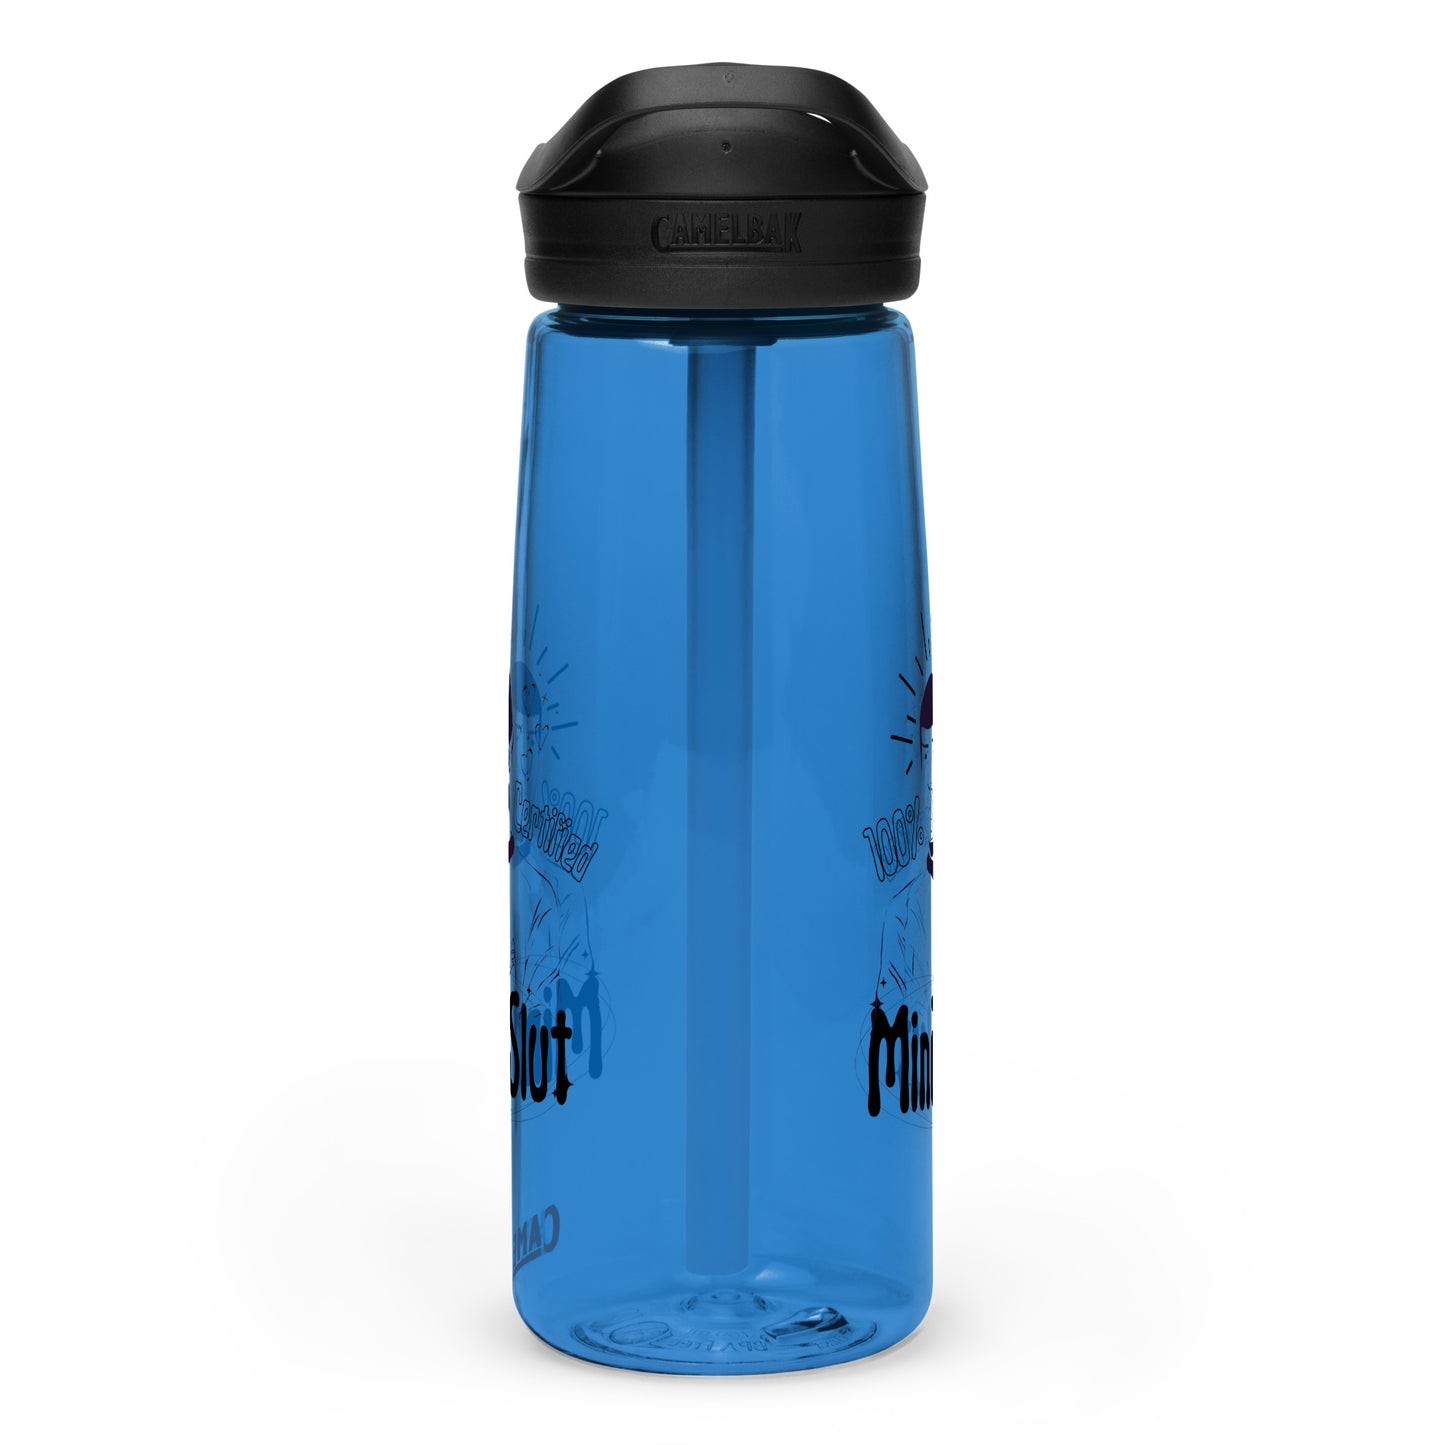 "Mind Slut" Sports water bottle